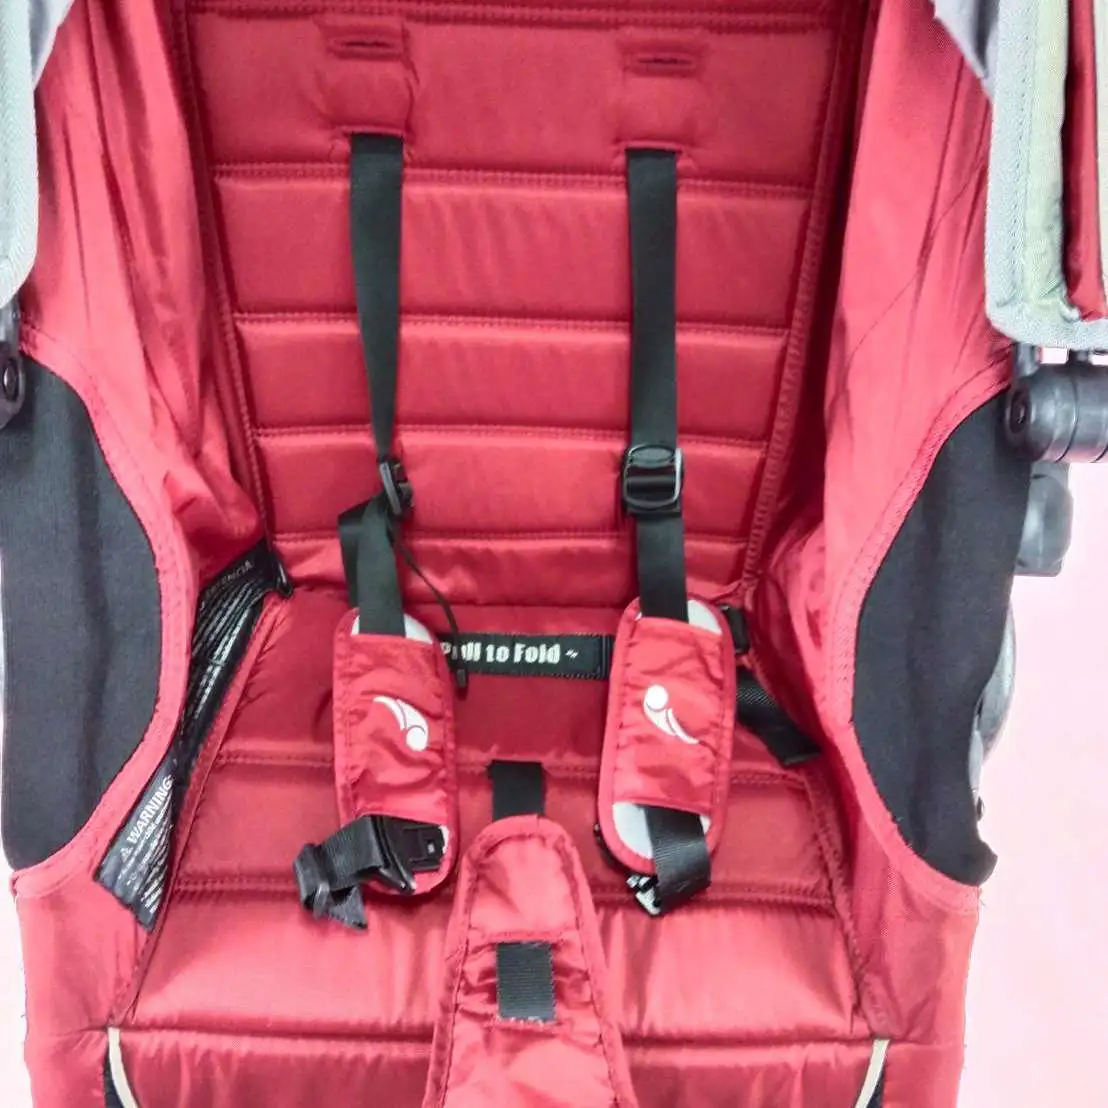 รถเข็นเด็ก Baby jogger city mini สีแดง​ พร้อมถุงใส่​เดินทางบนเครื่องบิน​ และถุงตาข่ายคลุมกันยุง